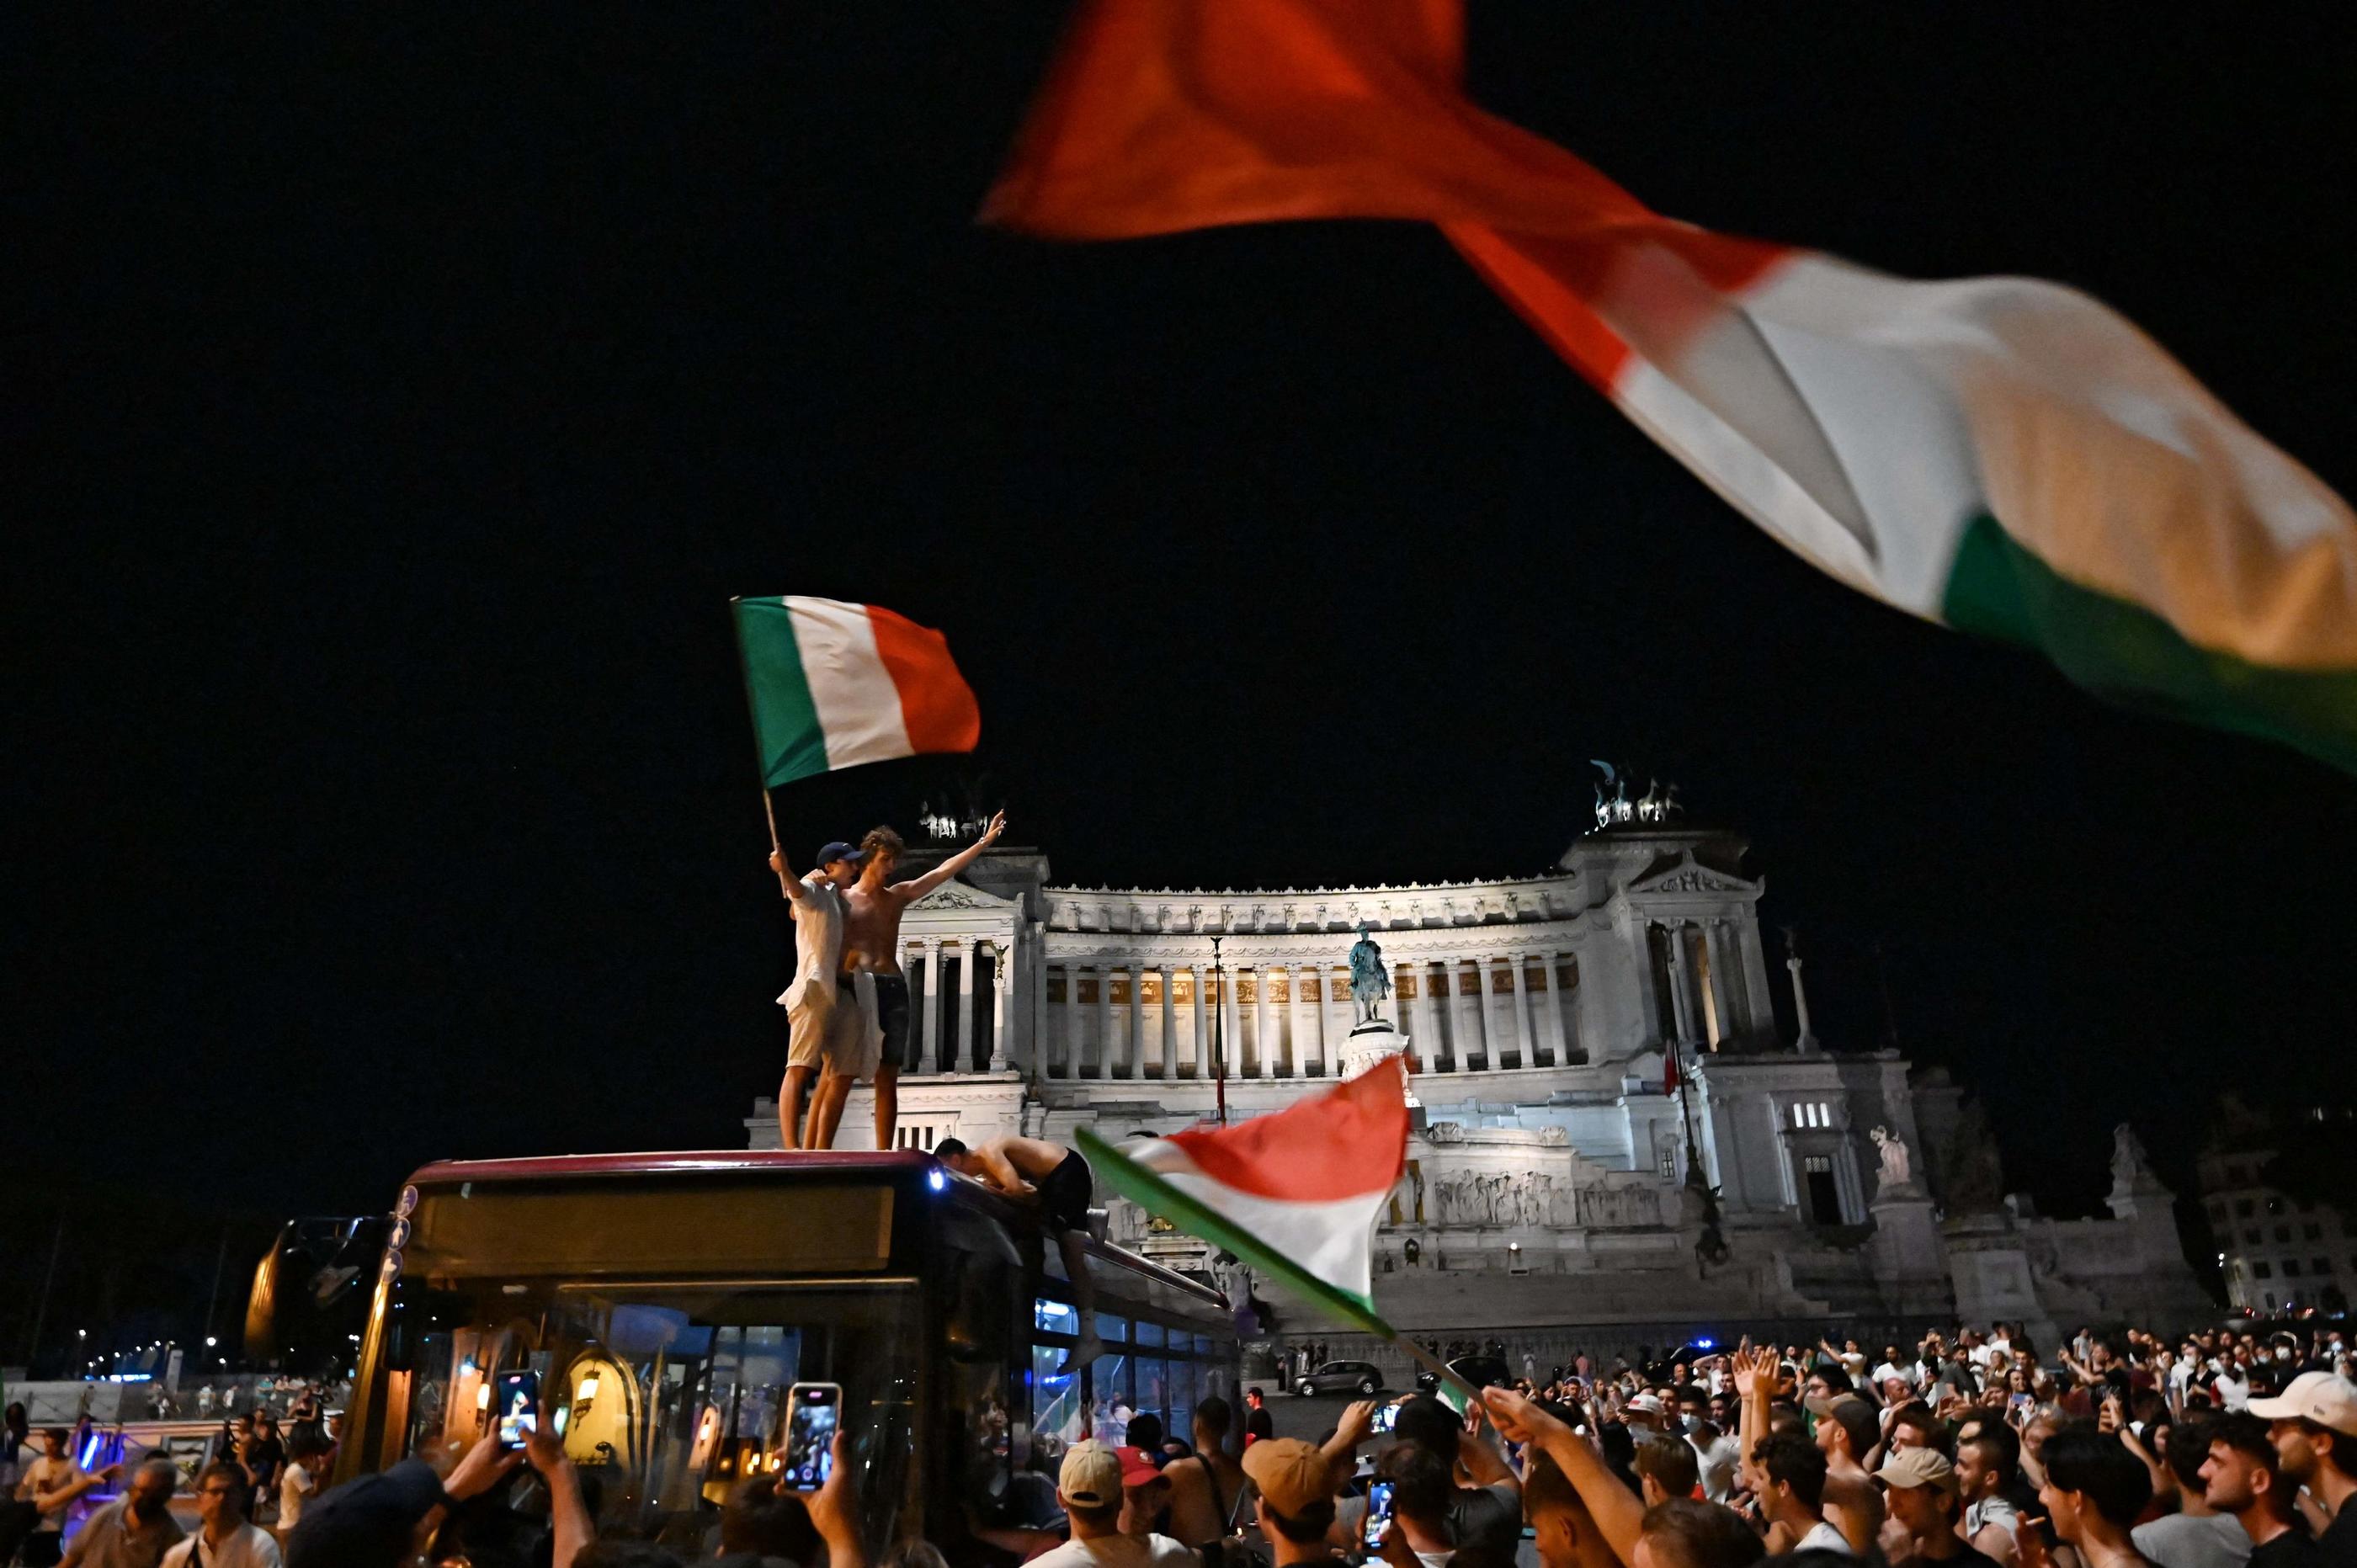 Les Italiens, ici sur Piazza Venezia à Rome, sont descendus dans les rues après la qualification de leur sélection nationale. AFP/Andreas Solaro